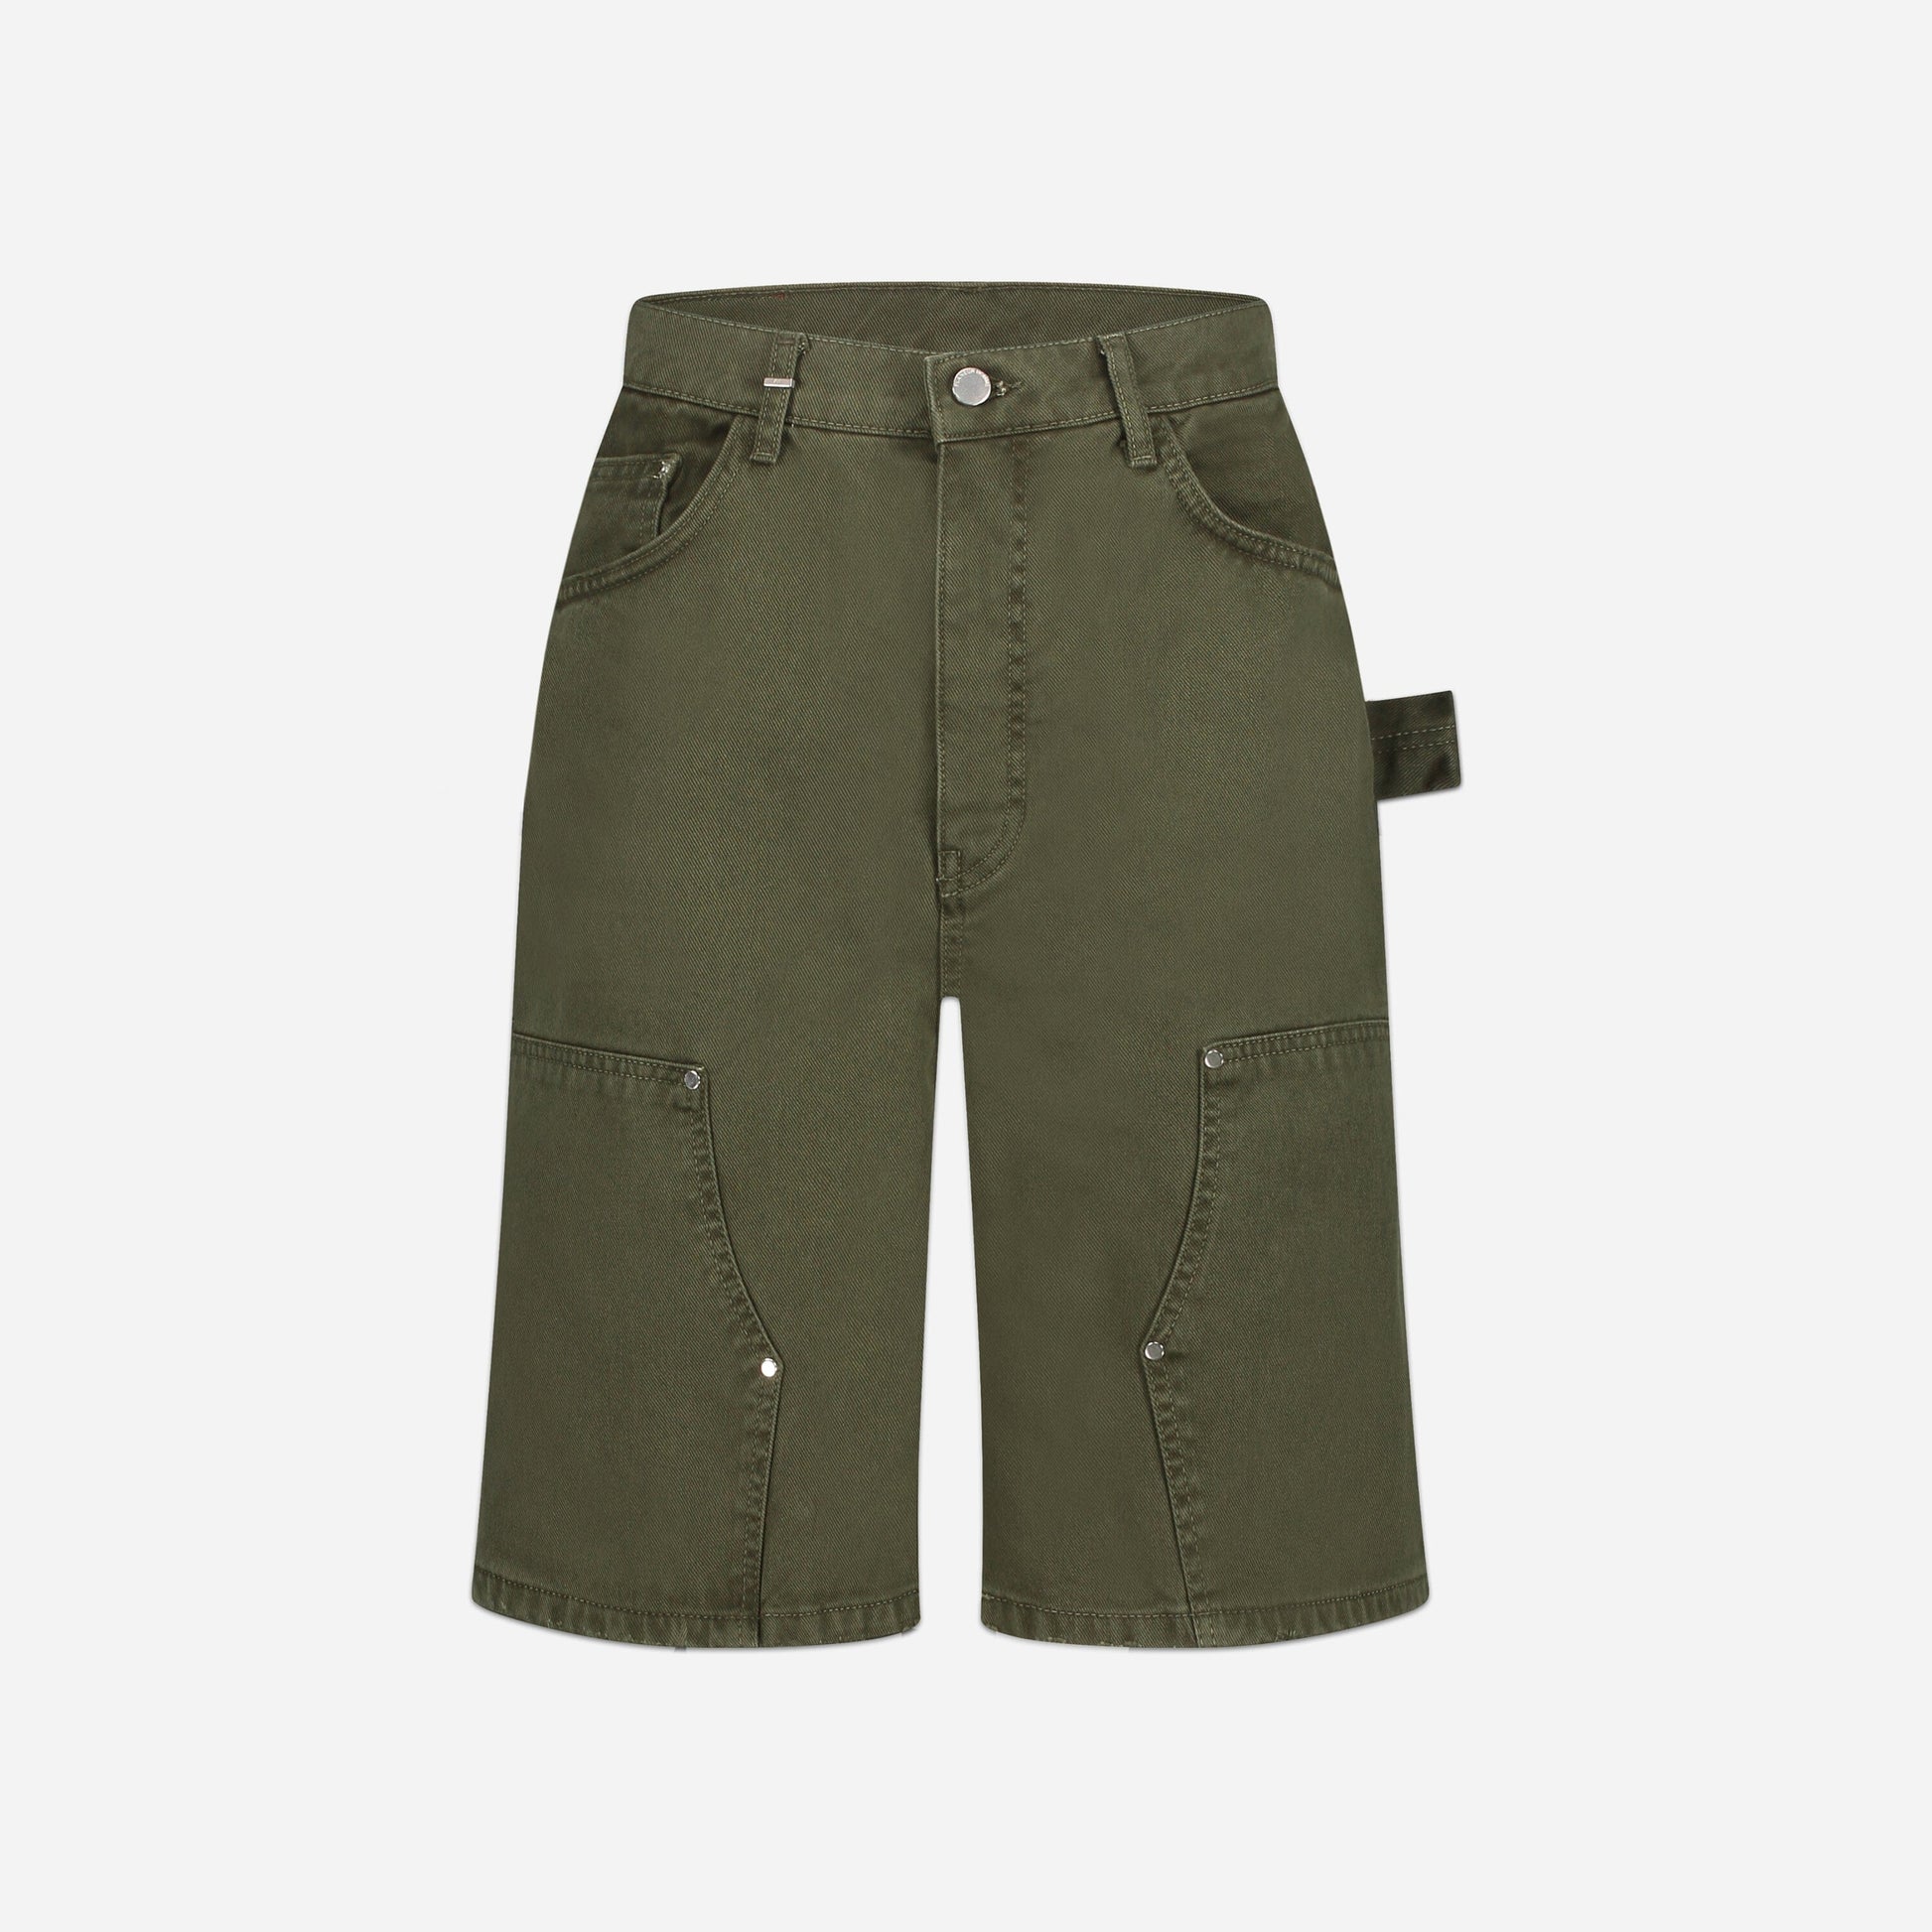 Carpenter Short Jeans in Washed Green Denim